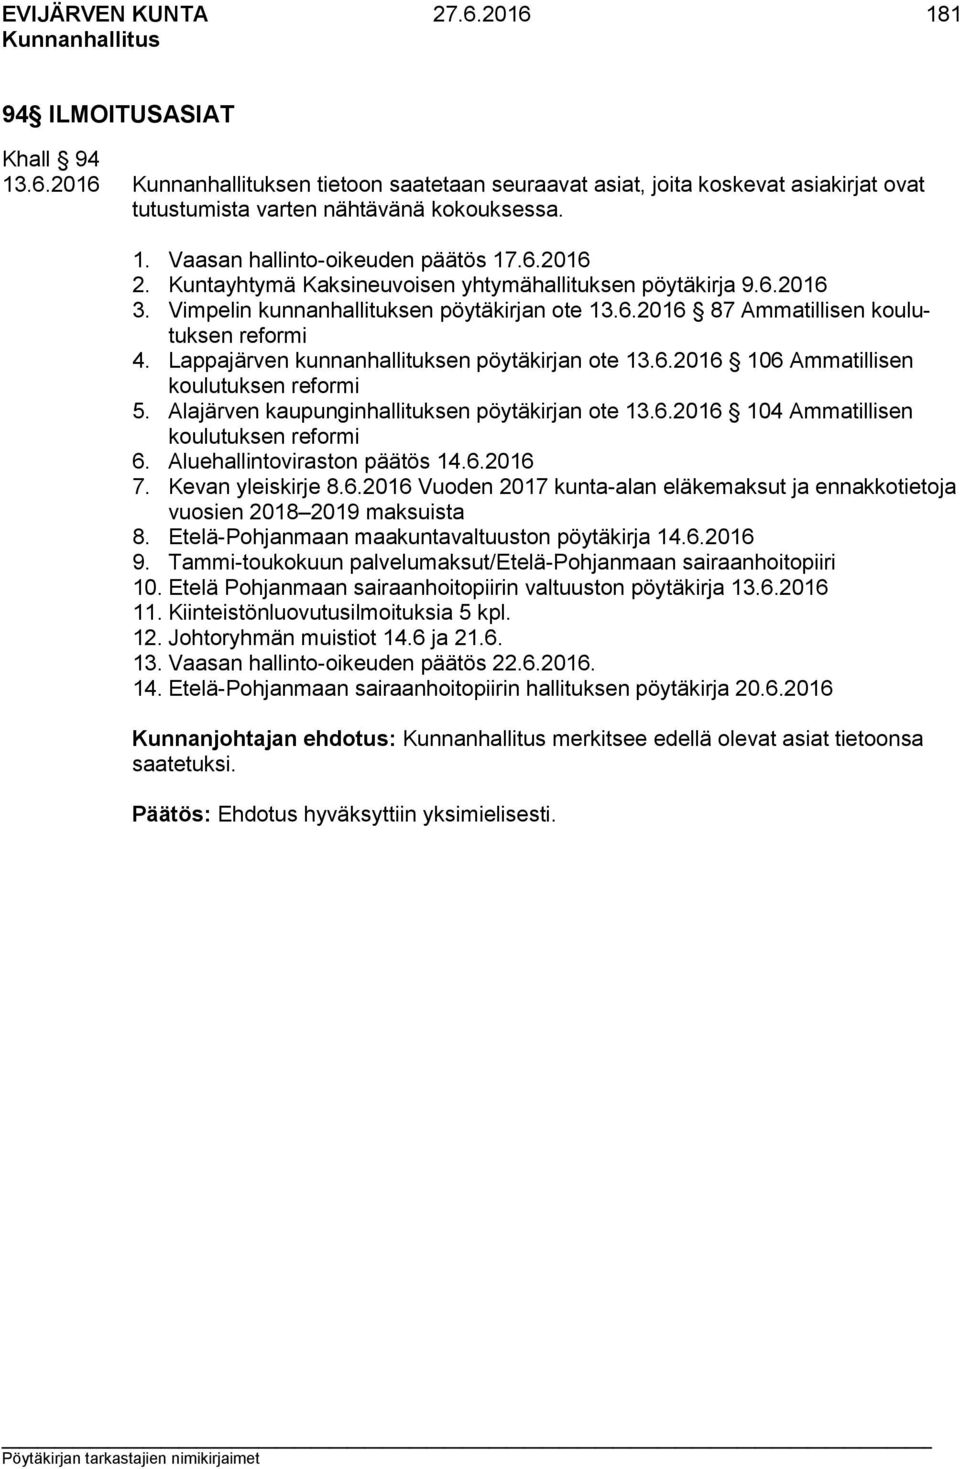 Lappajärven kunnanhallituksen pöytäkirjan ote 13.6.2016 106 Ammatillisen koulutuksen reformi 5. Alajärven kaupunginhallituksen pöytäkirjan ote 13.6.2016 104 Ammatillisen koulutuksen reformi 6.